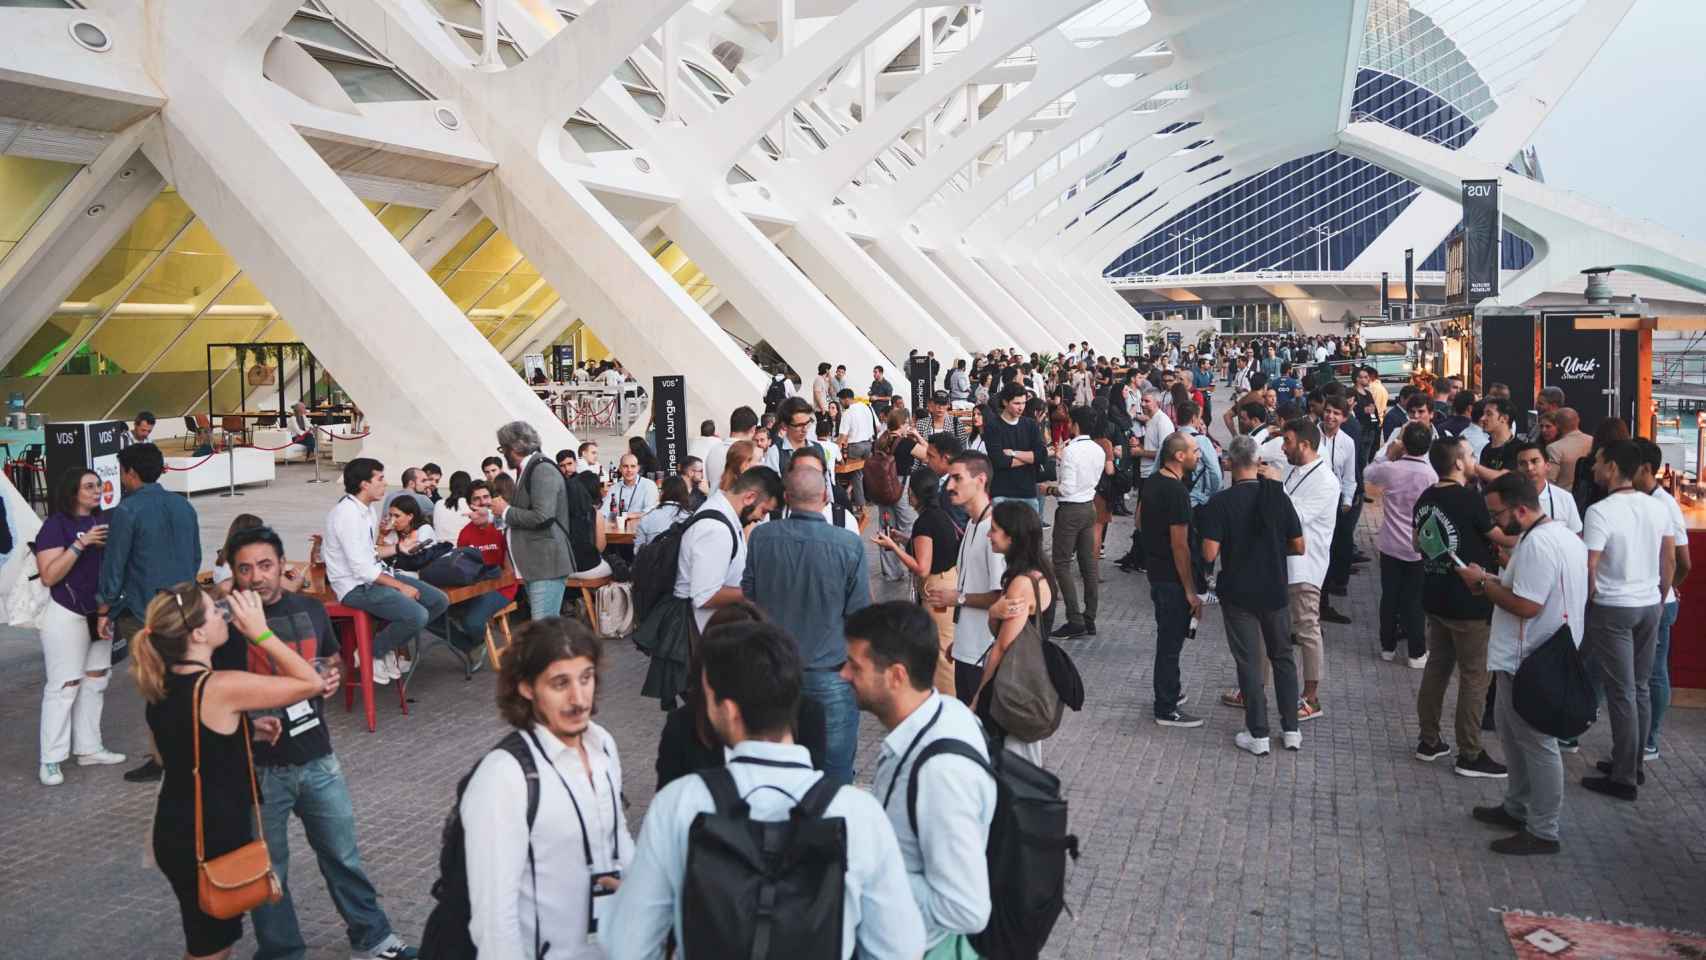 La pasada edición de Valencia Digital Summit acogió a numeroso público, más de 12.000 personas según las cifras oficiales, en la Ciudad de las Artes y las Ciencias de Valencia.